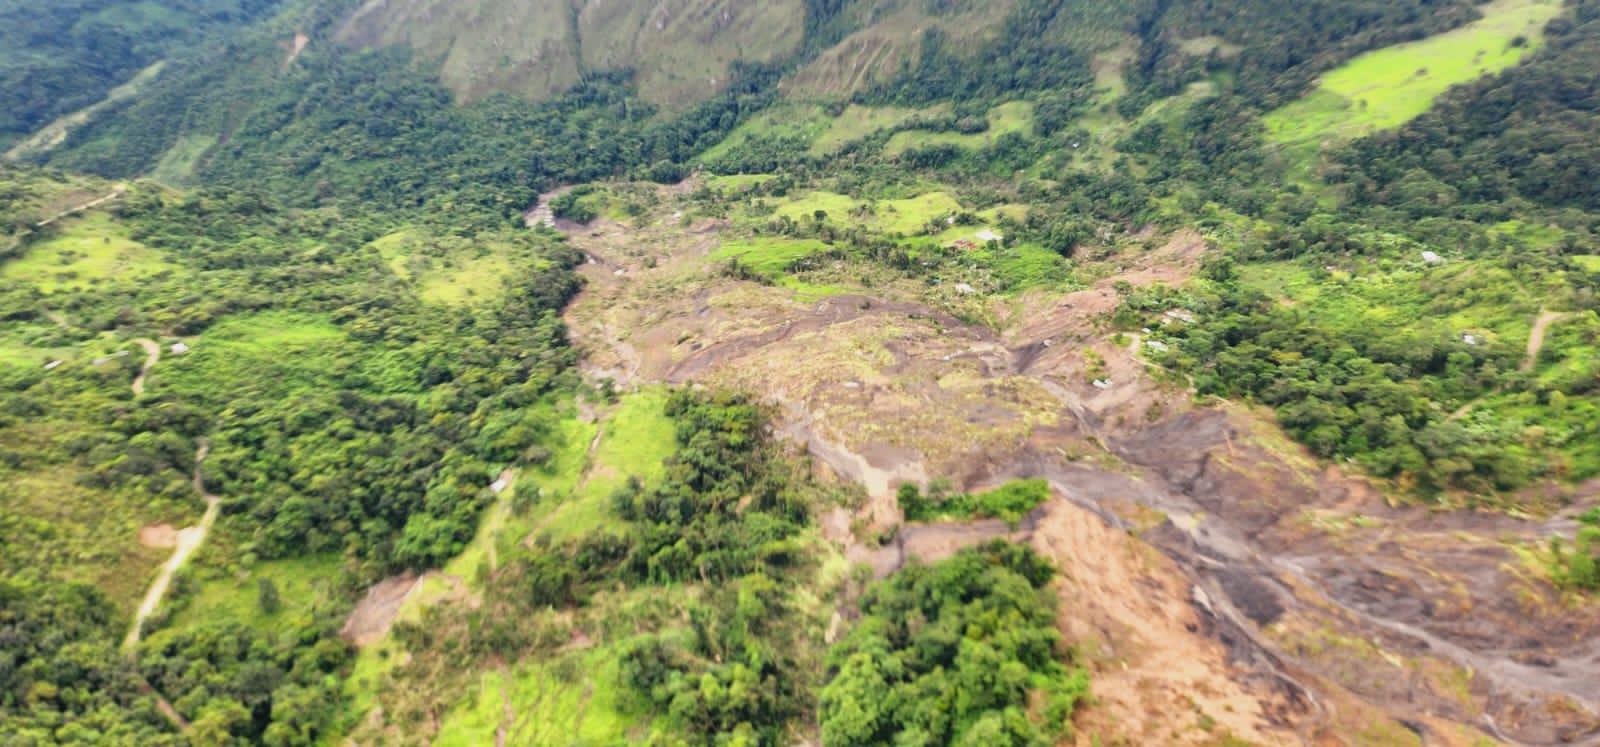 Monitoreo aéreo por deslizamiento de tierra en Paya, Boyacá